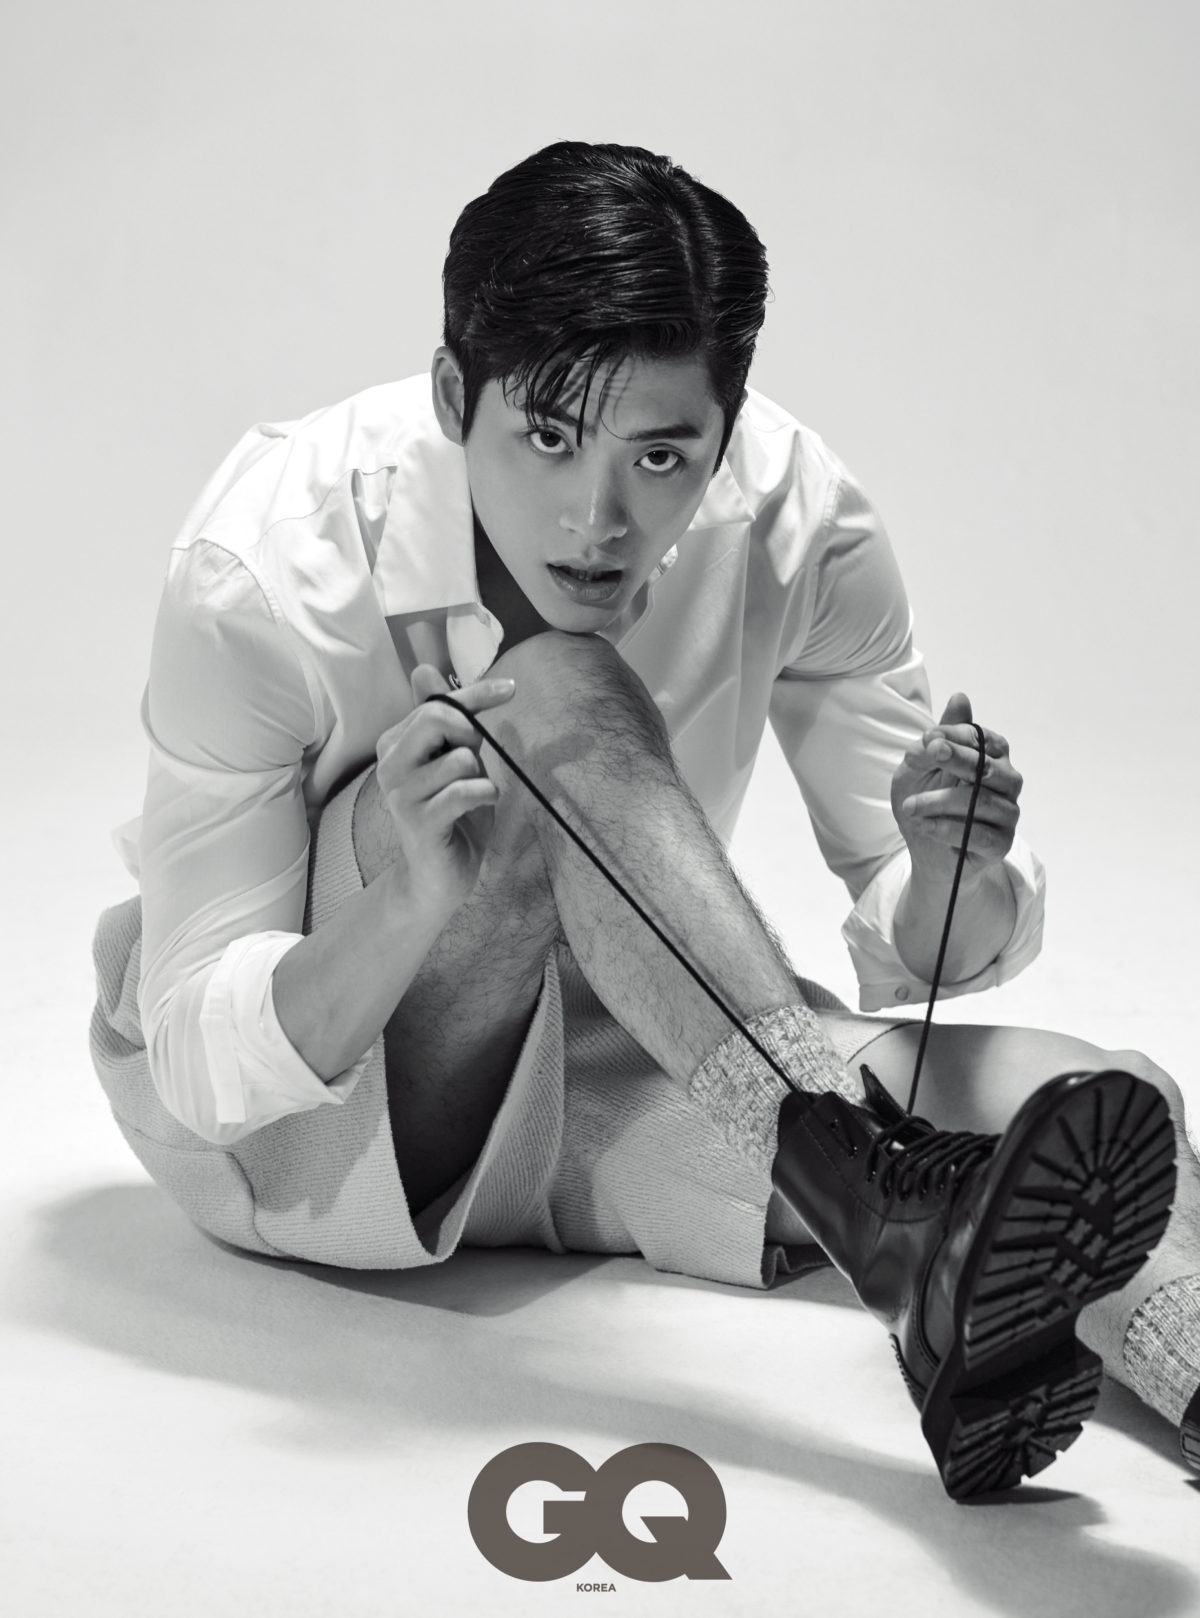 Tài tử Kang Tae Oh khoe vẻ đẹp nam tính trong bộ ảnh mới - Ảnh 3.